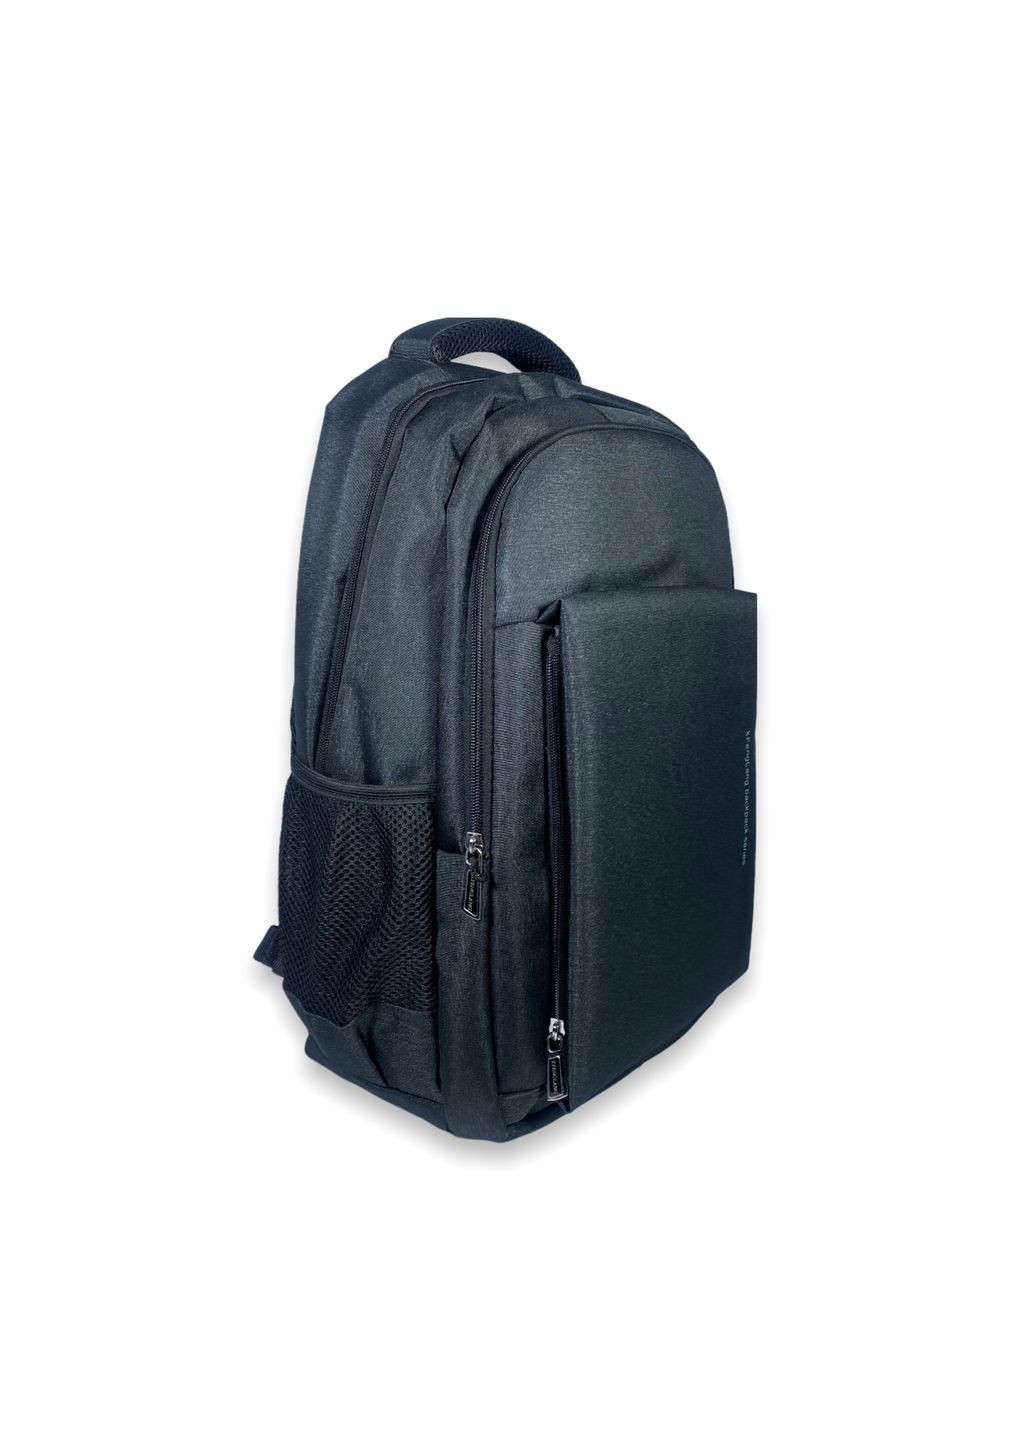 Городской рюкзак, два отдела внутренний карман,фронтальные карманы боковые карманы разм: 50*32*20 черный Xiu Xian Bag (285814843)